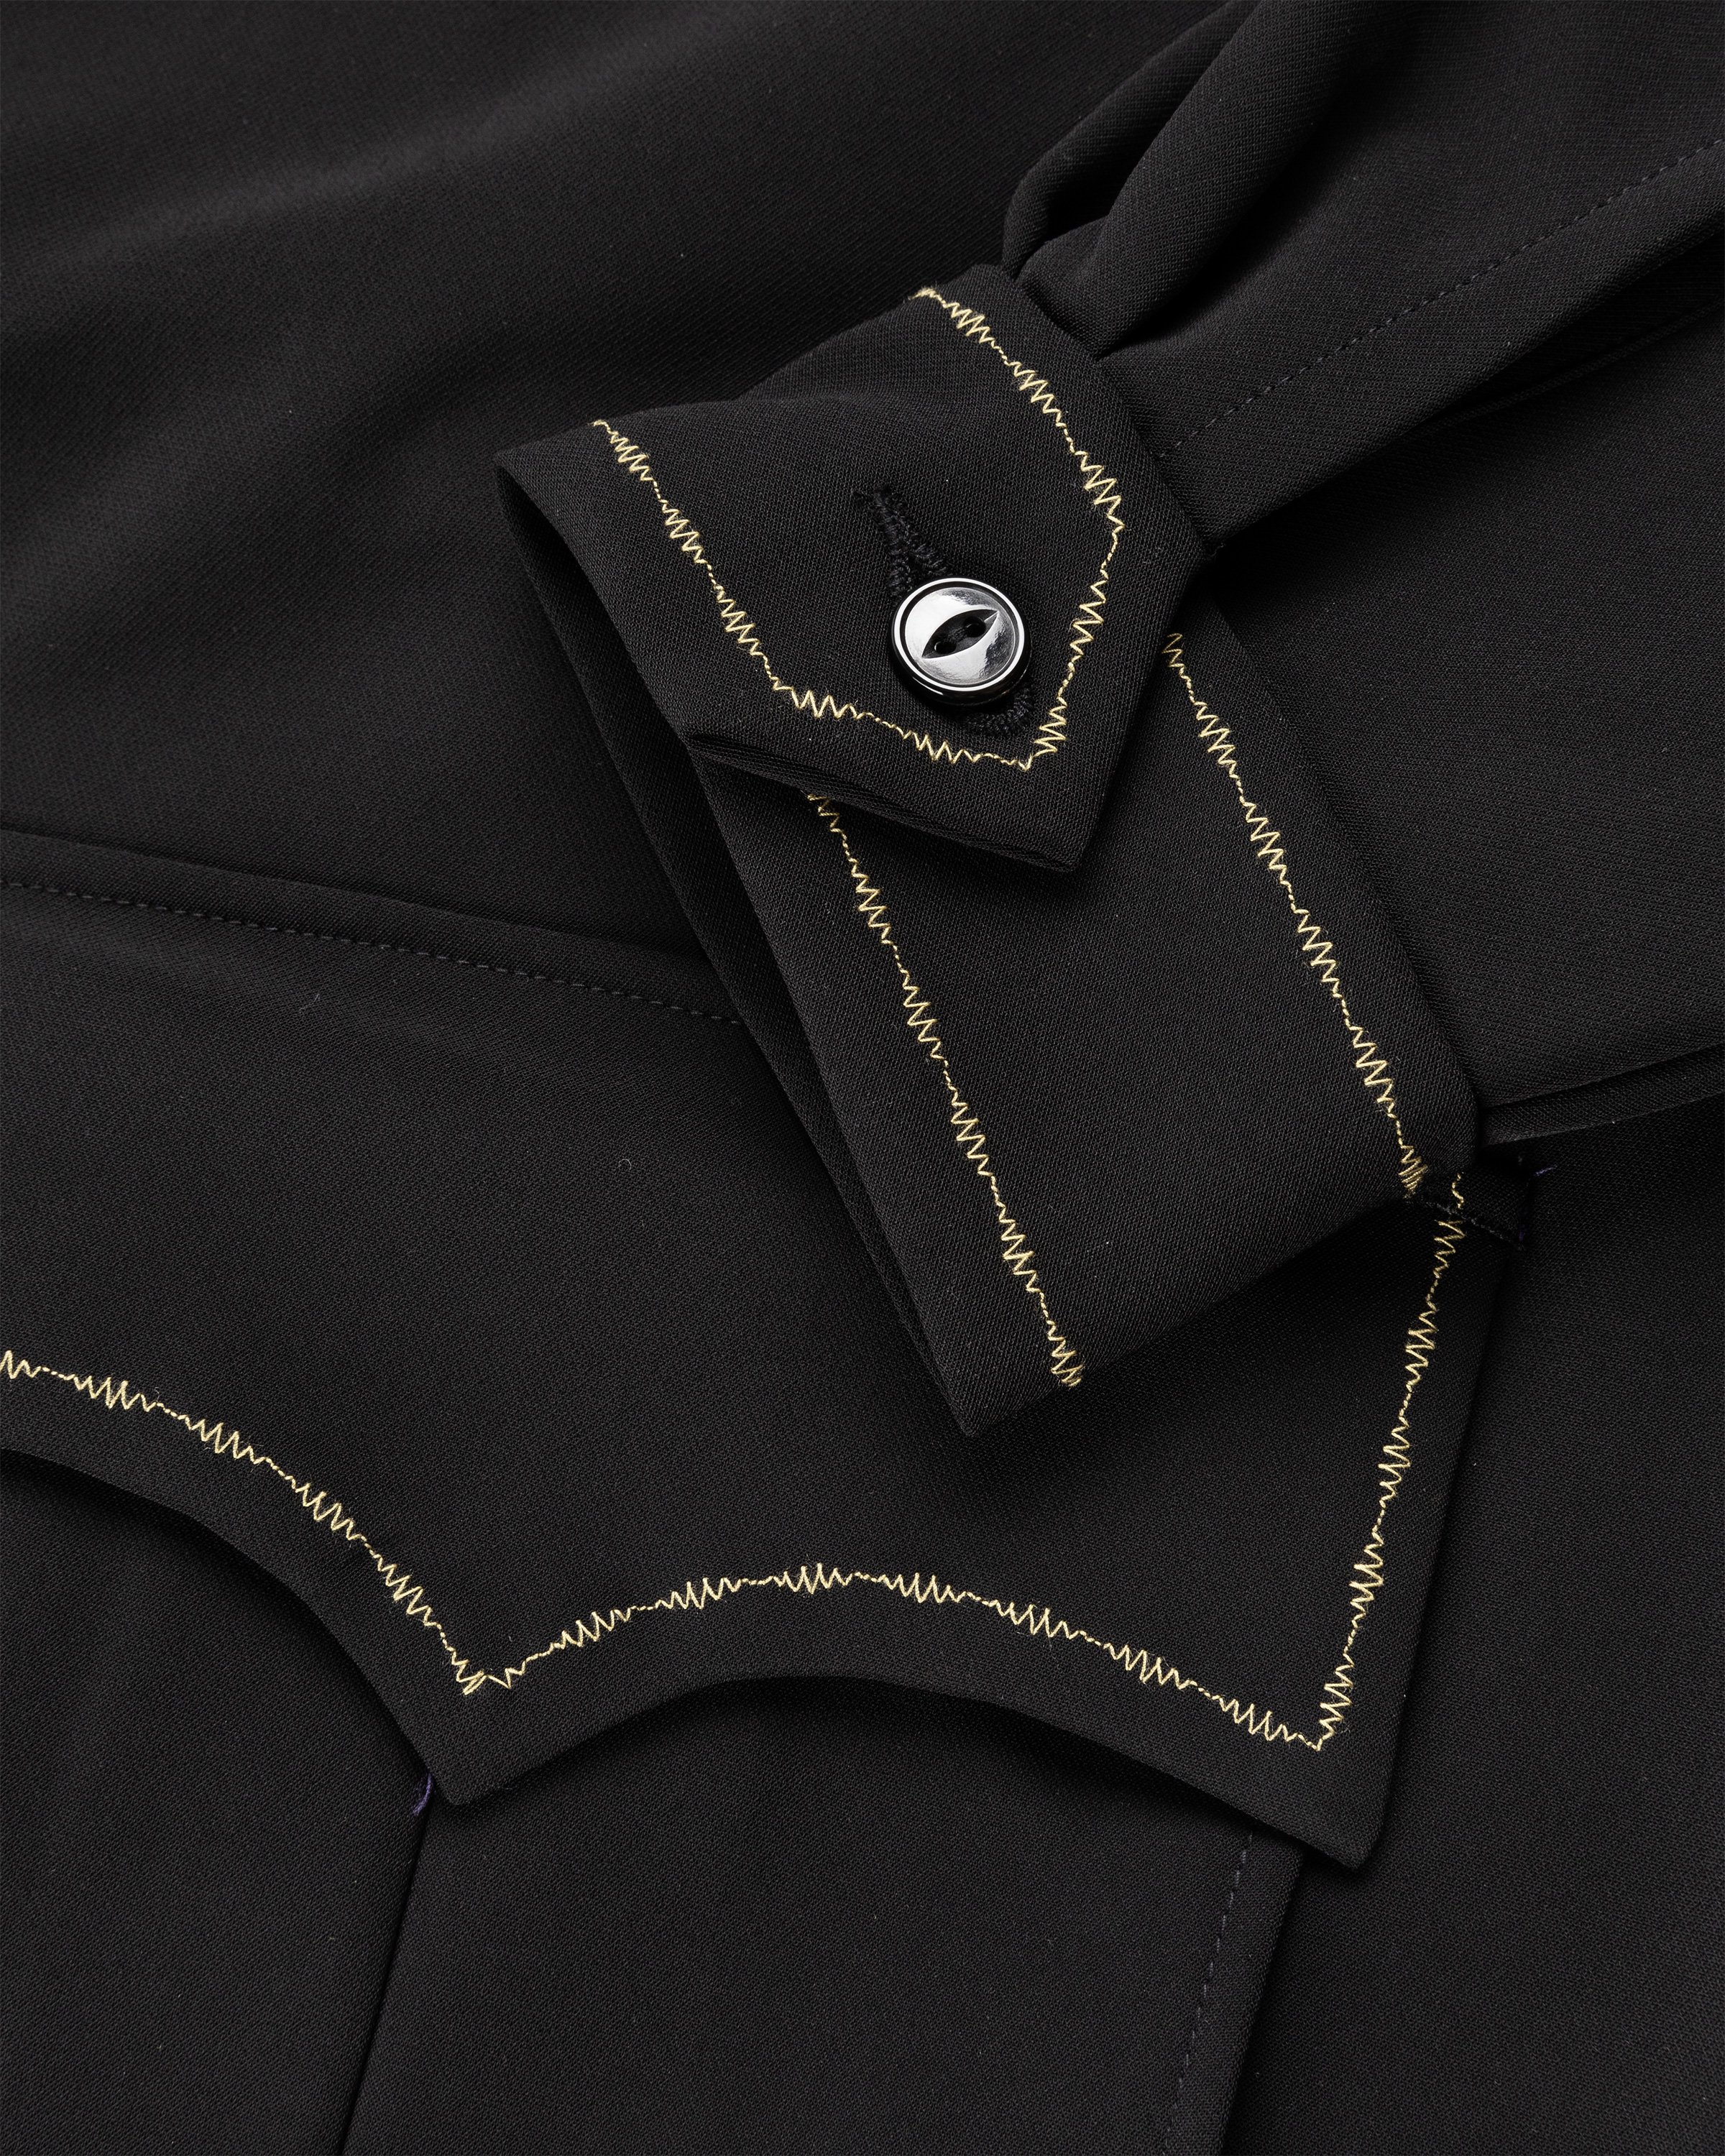 Needles - Western Sport Jacket - PE/PU Double Cloth - Clothing - Black - Image 7